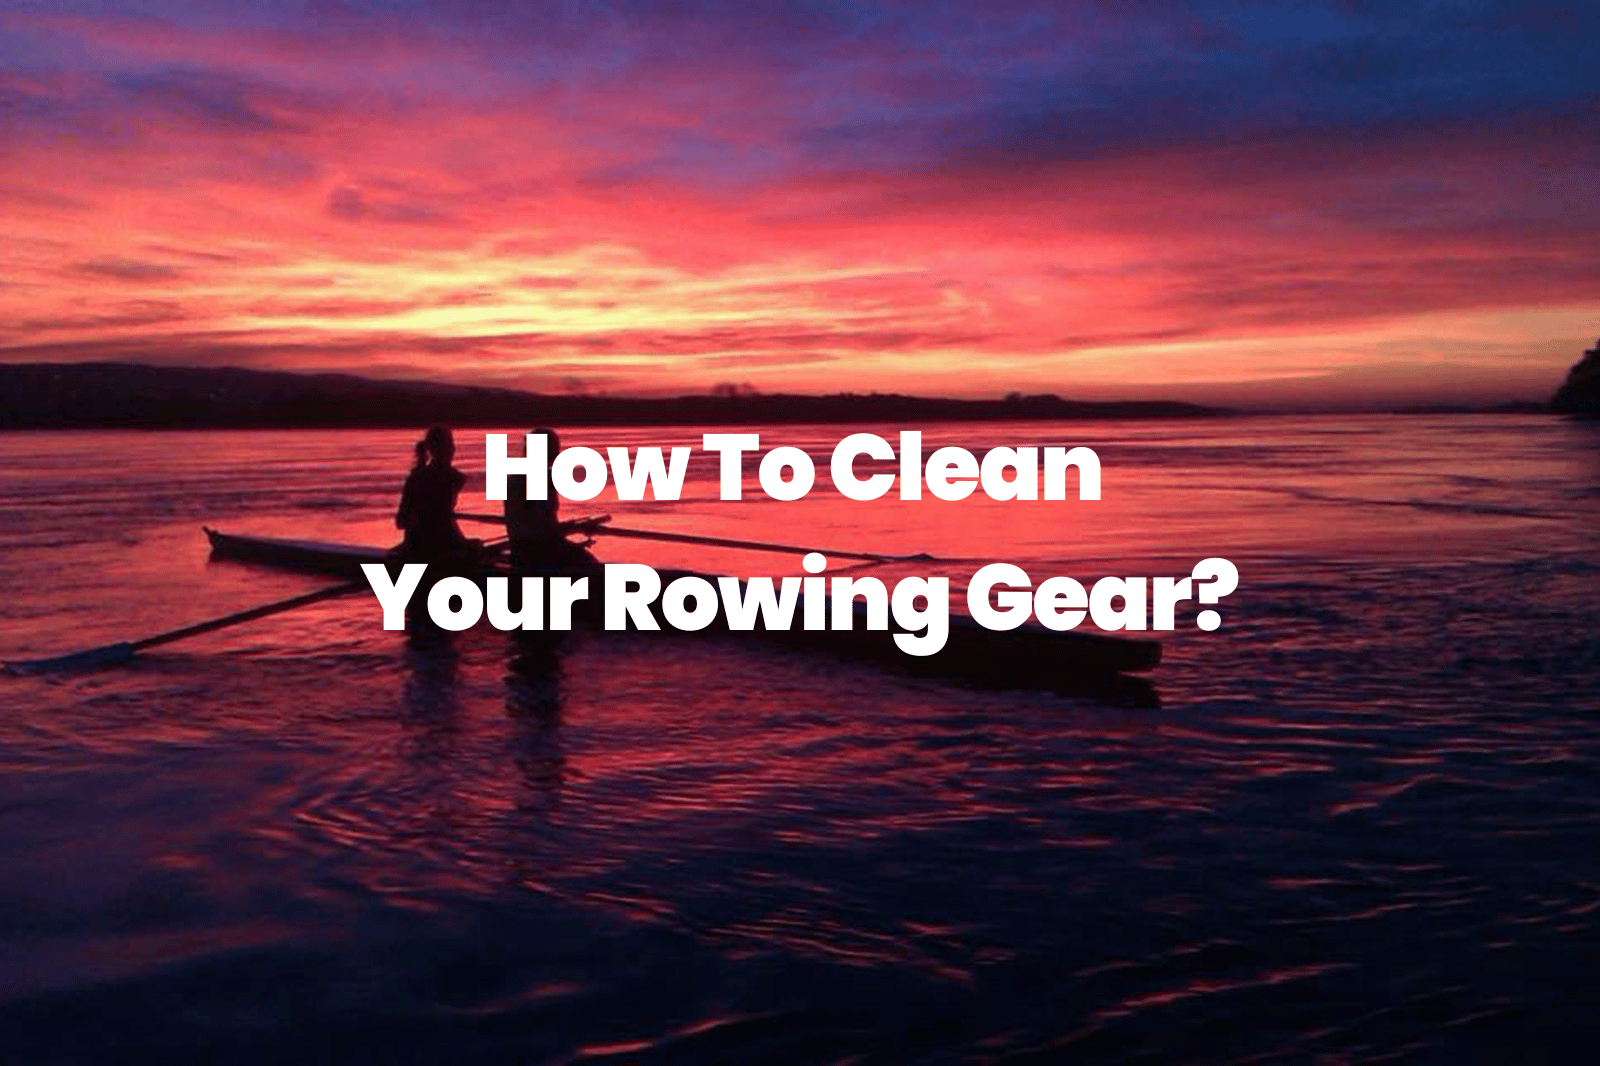 rowing gear